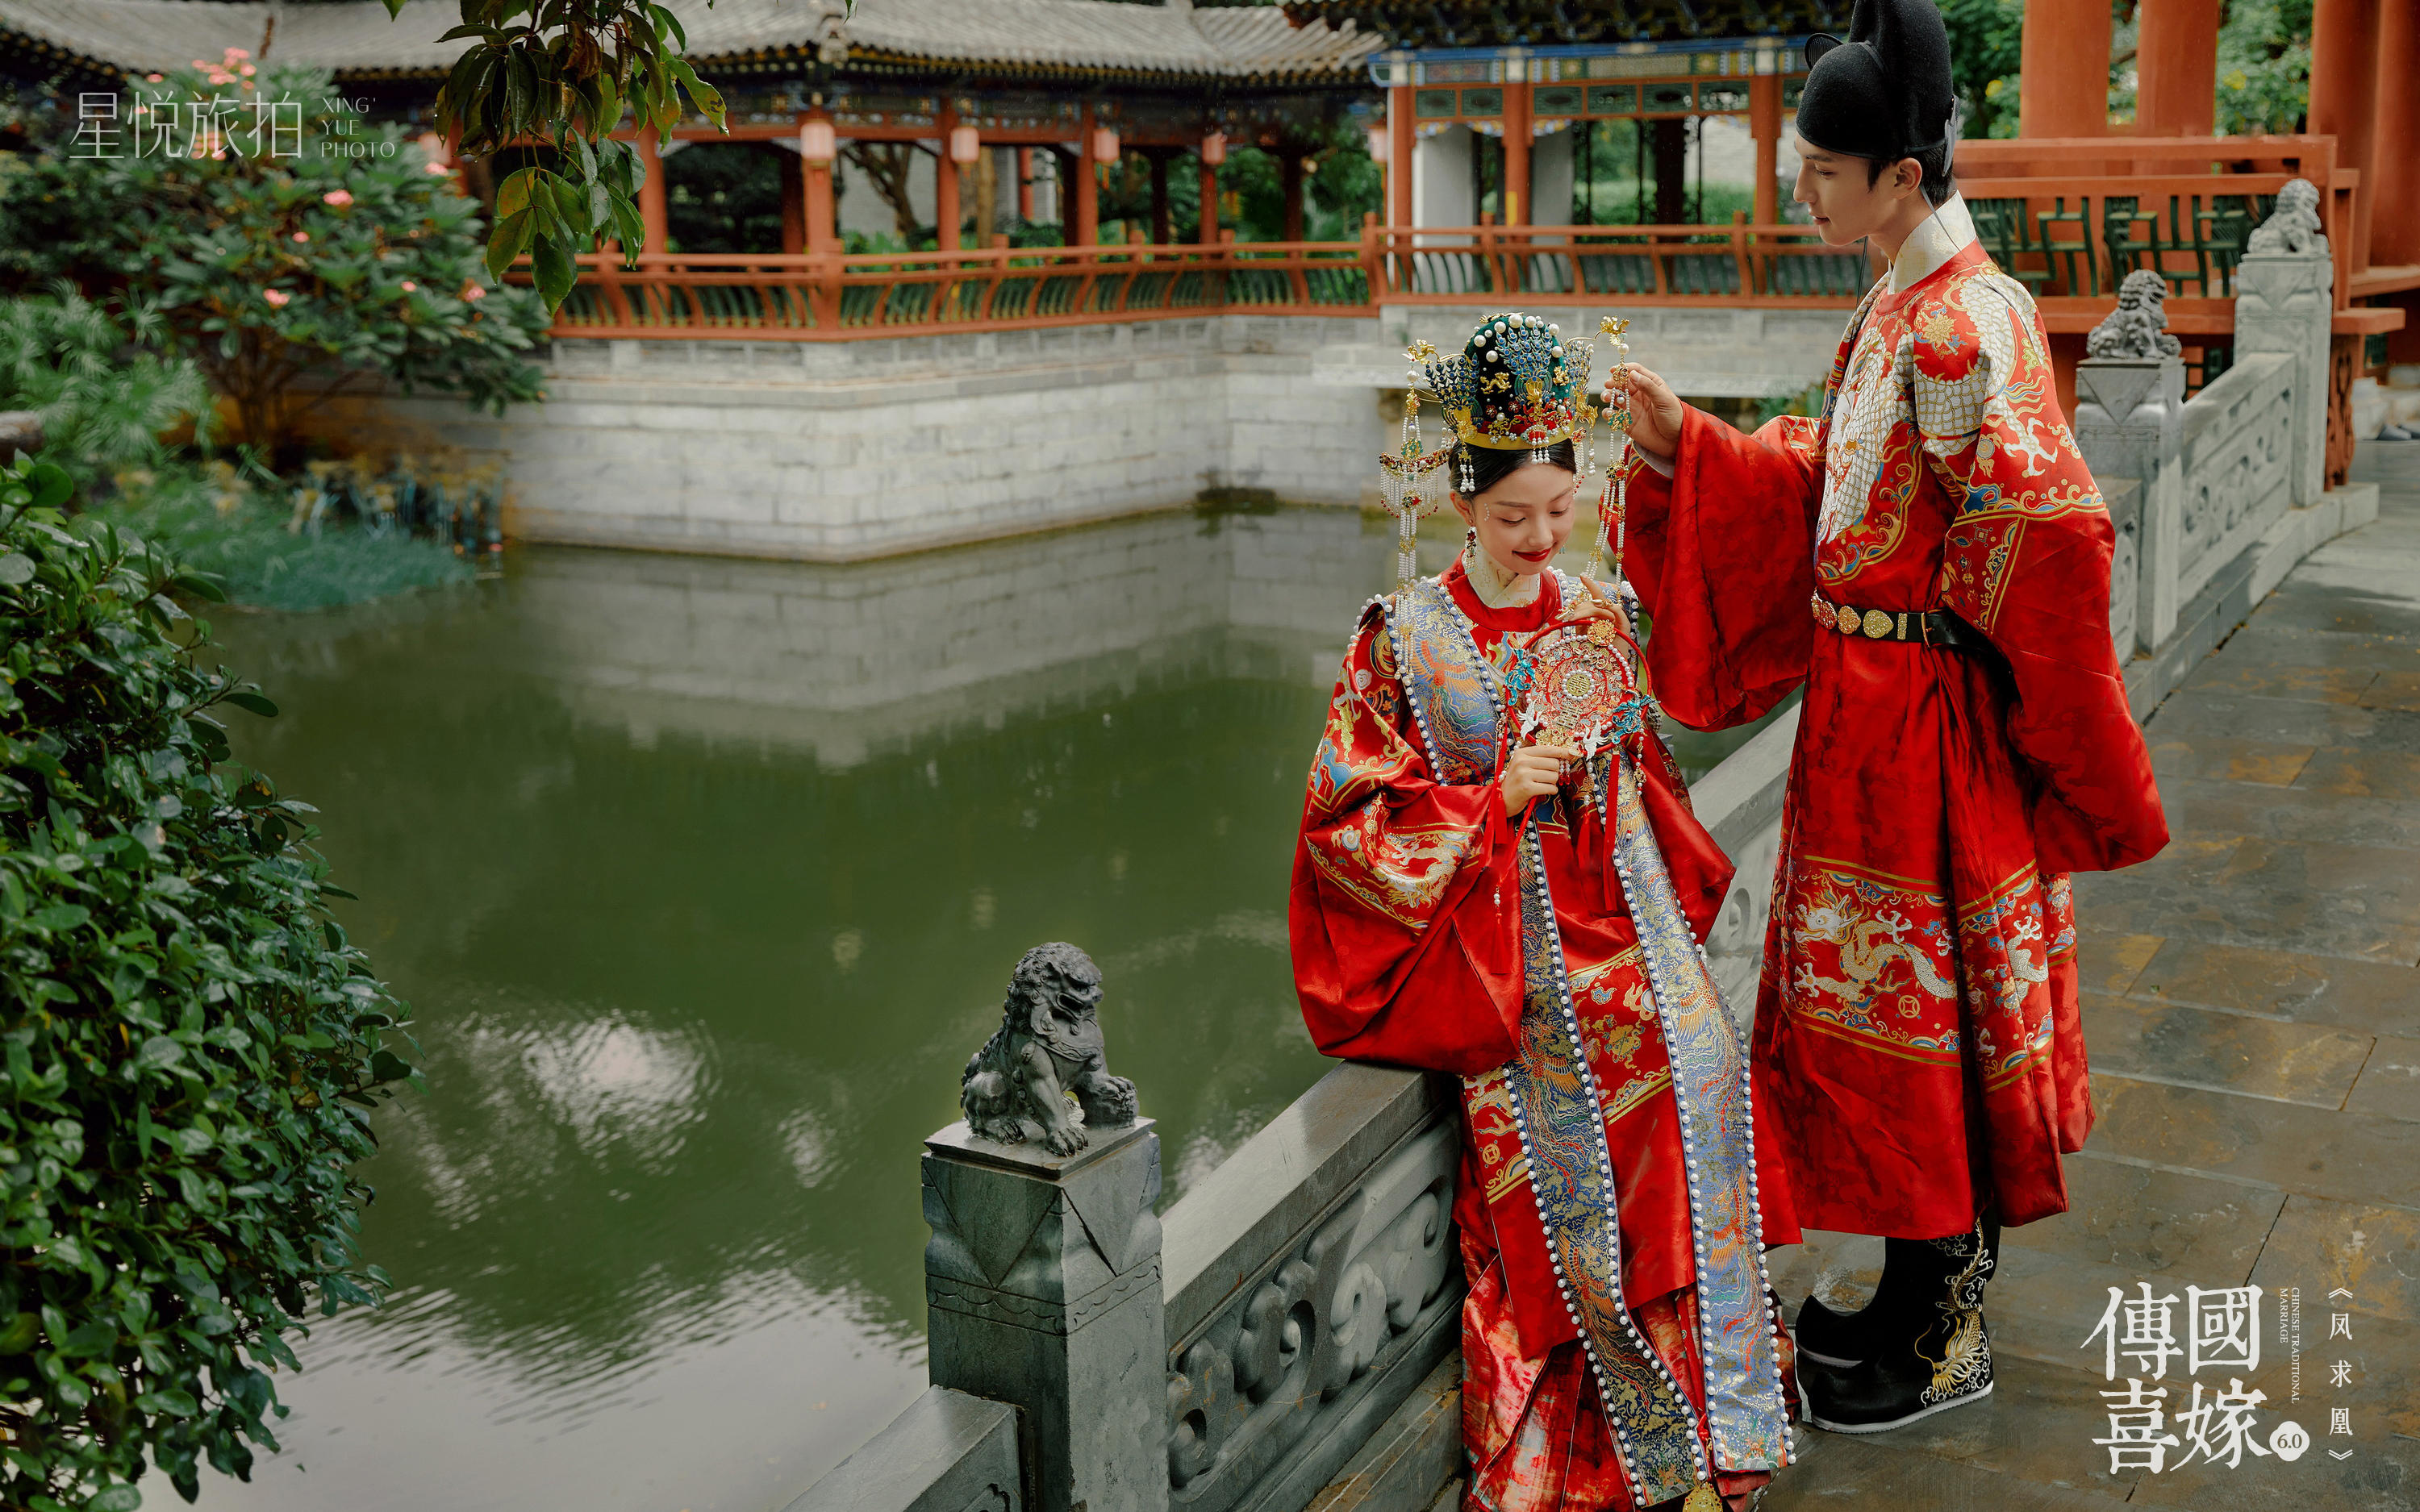 拍了心心念念的中式汉服婚纱照丨被长辈夸爆